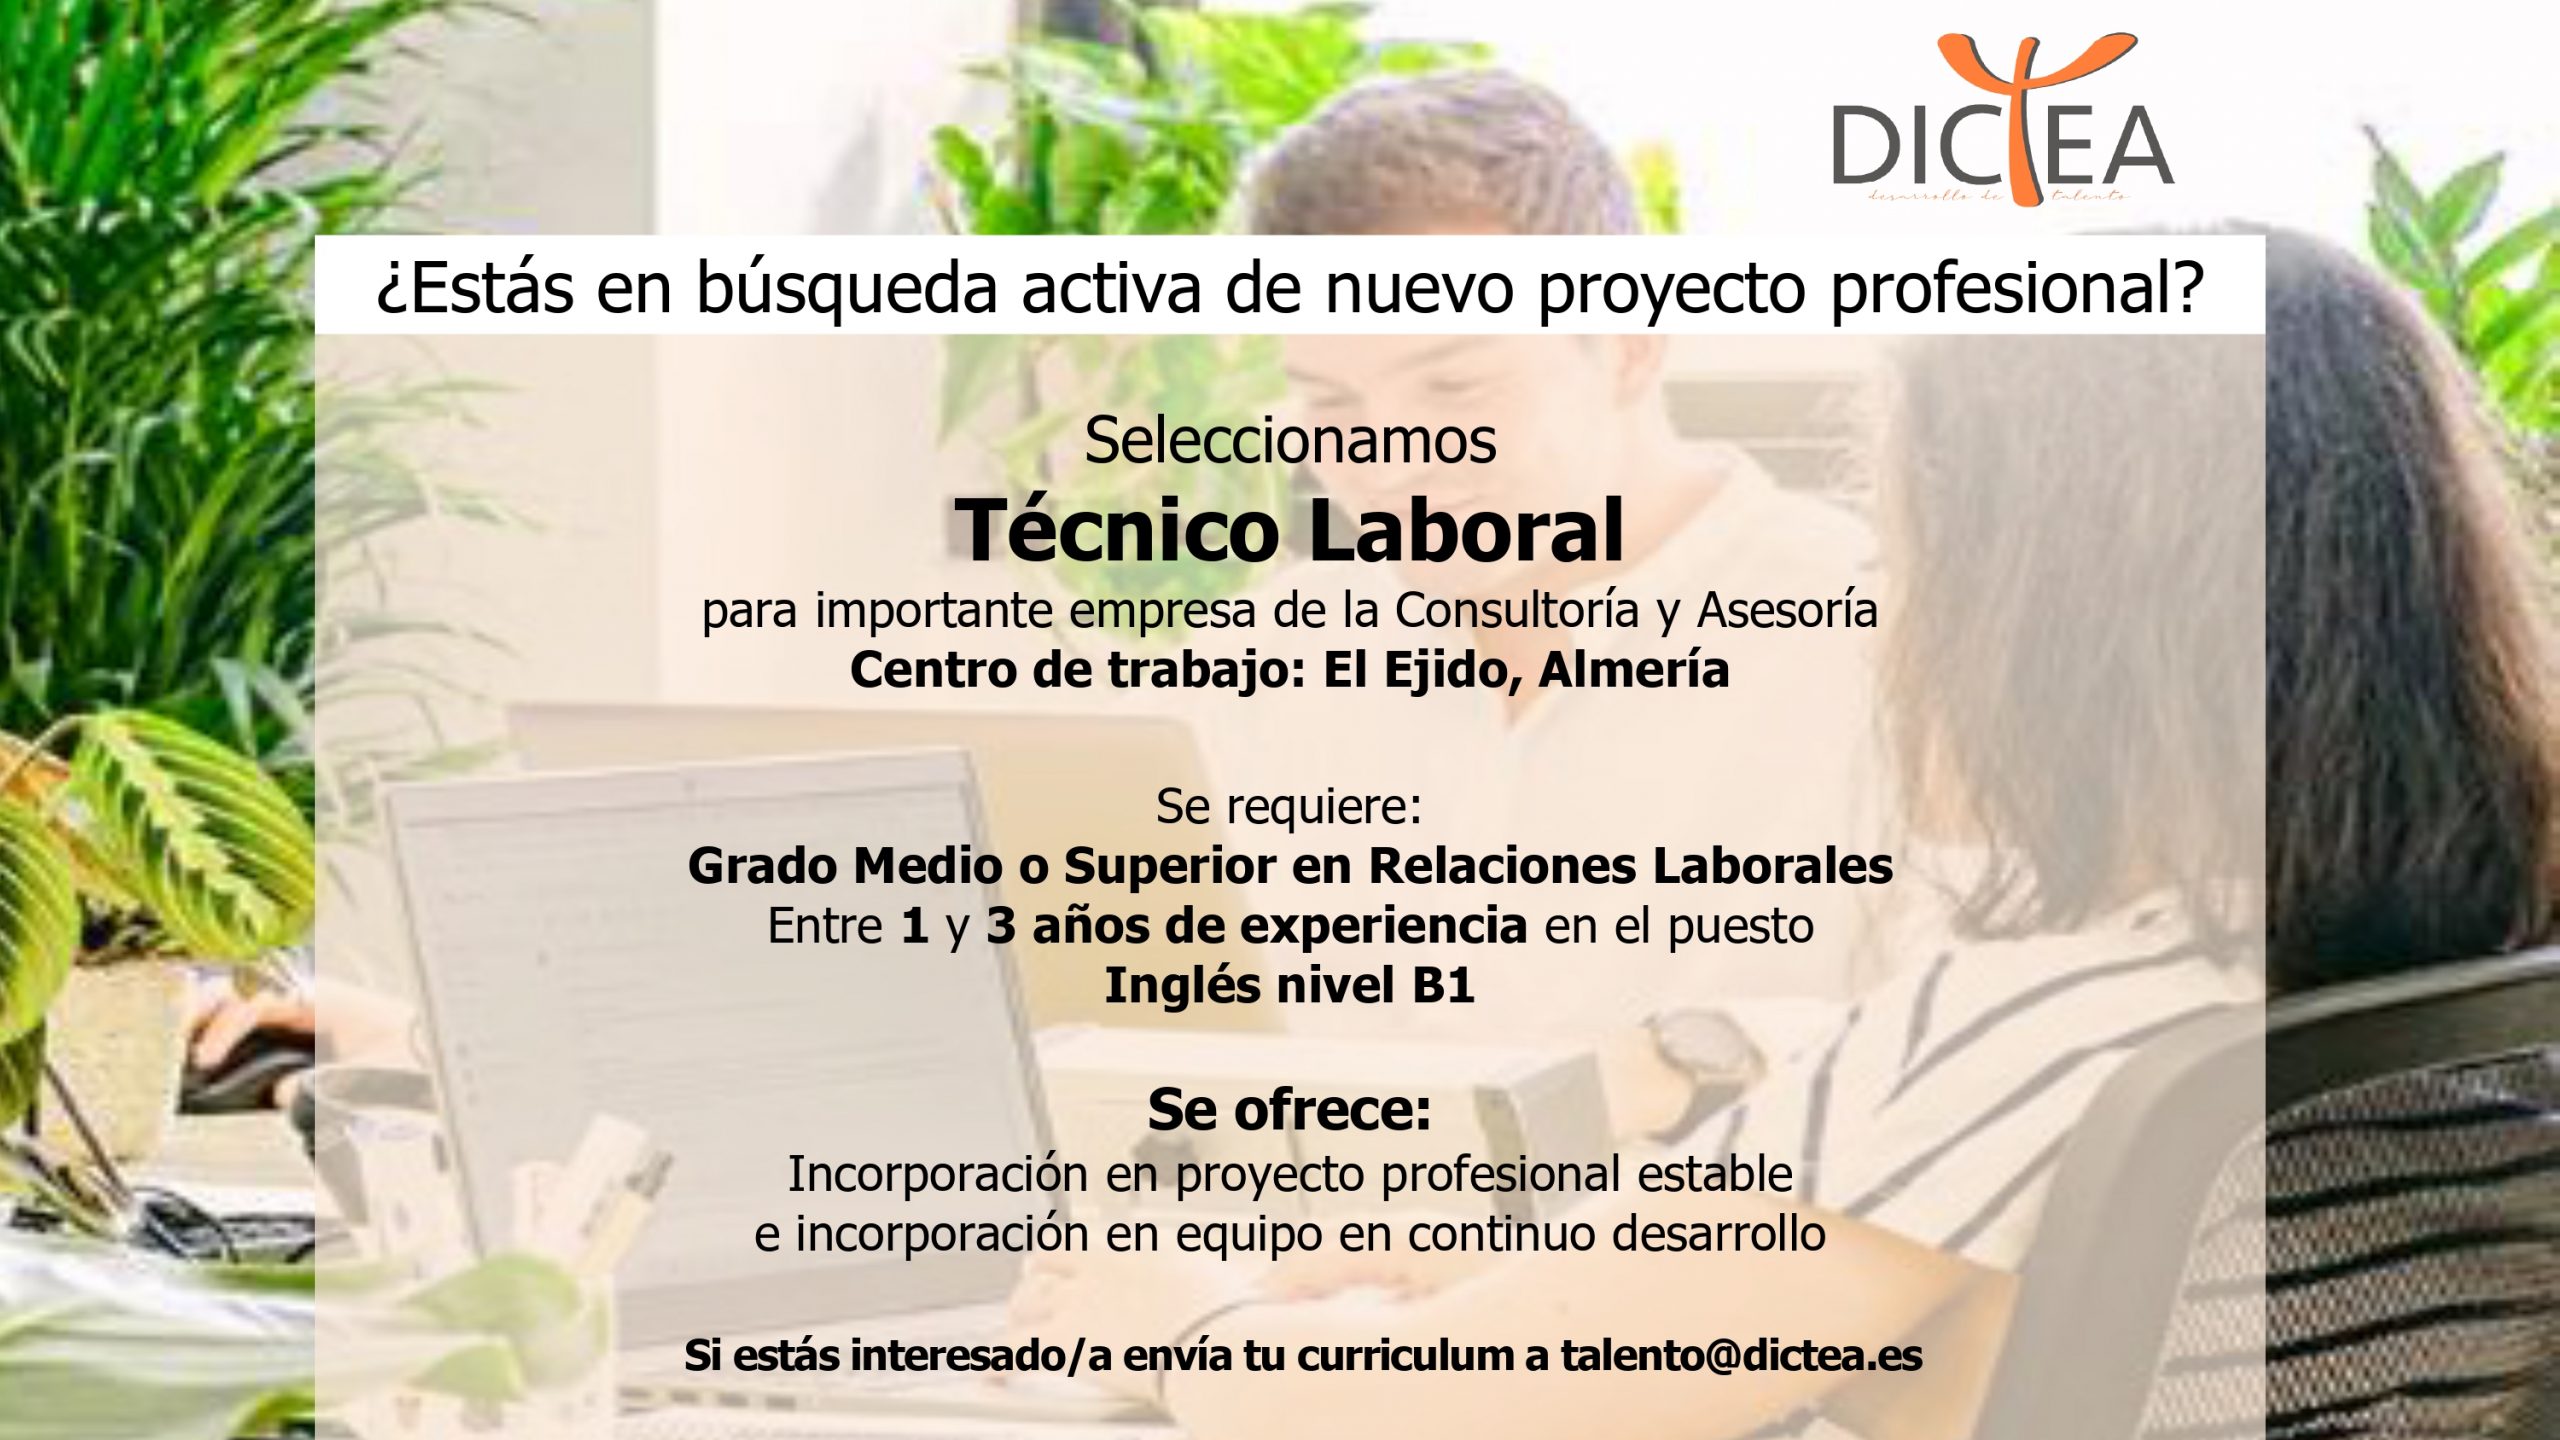 Oferta de trabajo el Ejido y Almería Técnico Laboral